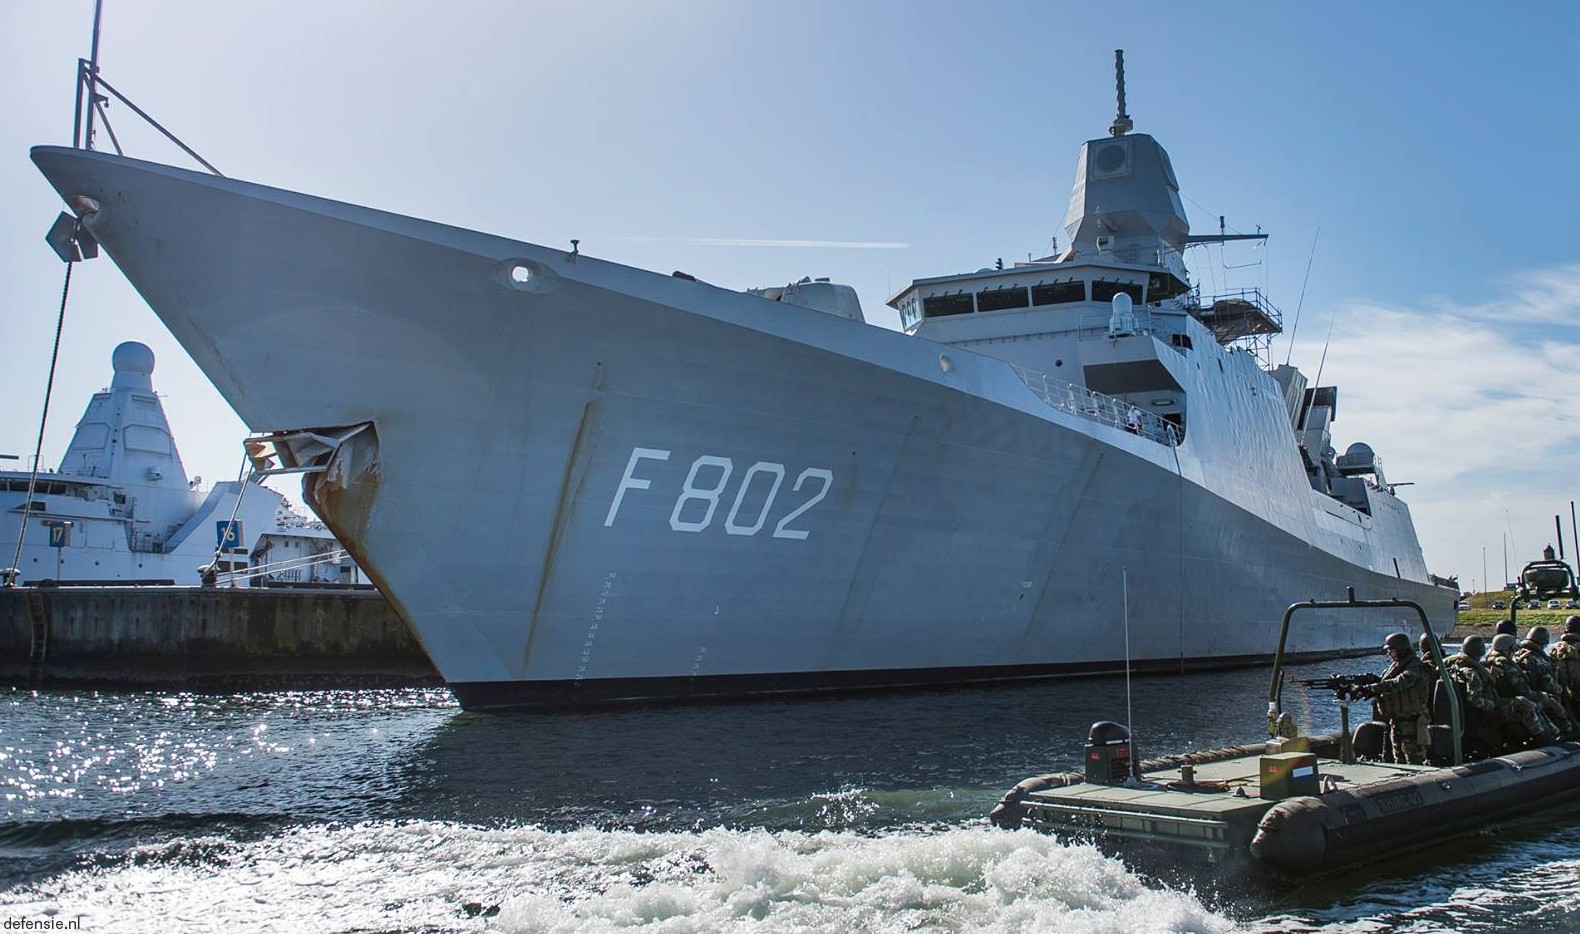 f-802 hnlms de zeven provincien guided missile frigate ffg royal netherlands navy 12 den helder